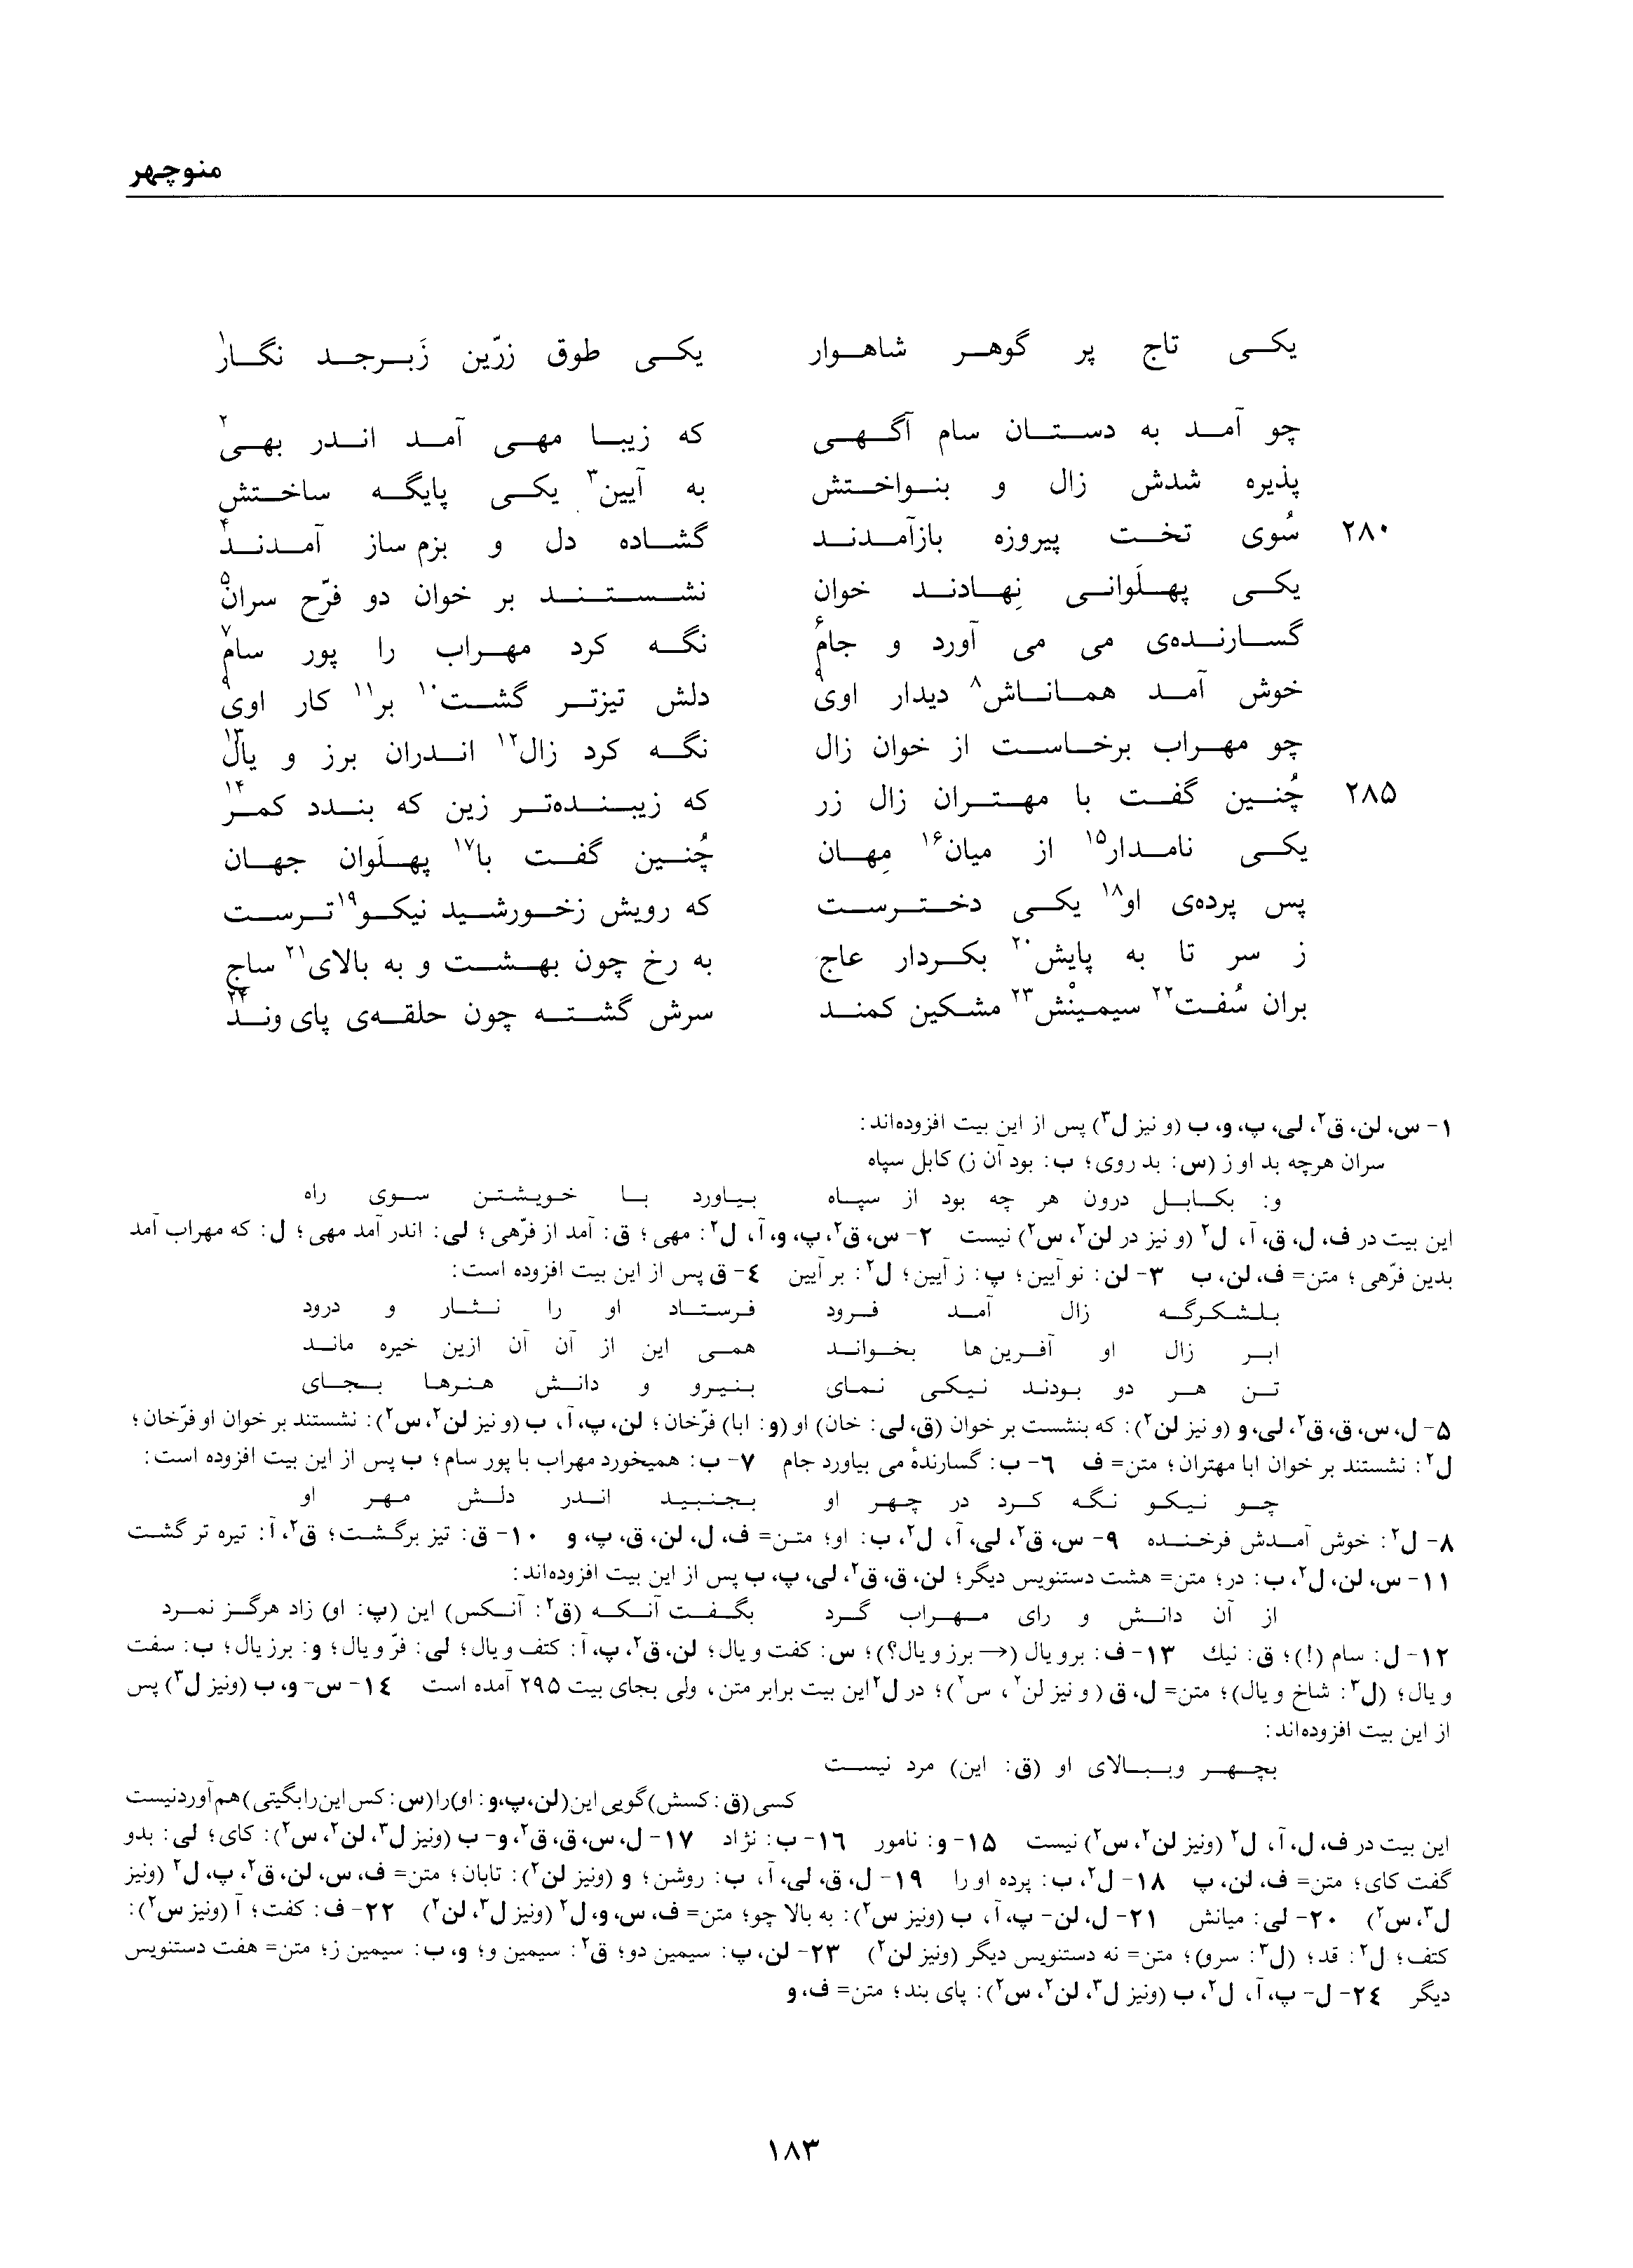 vol. 1, p. 183